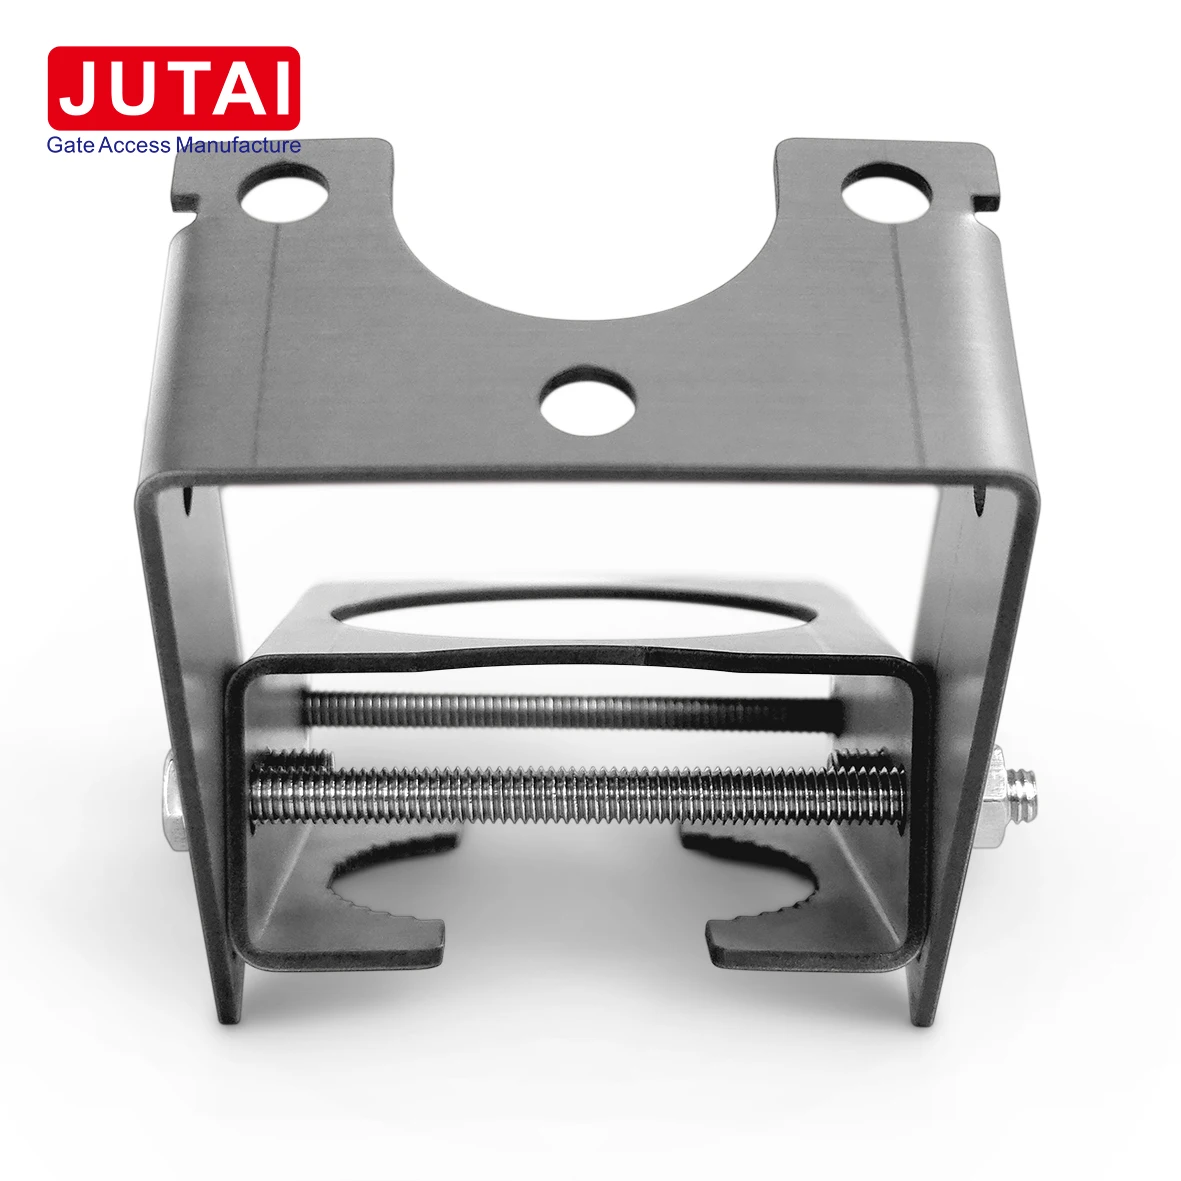 JUTAI UHF-RFID-Aktivleser mit großer Reichweite enthalten aktive Tags